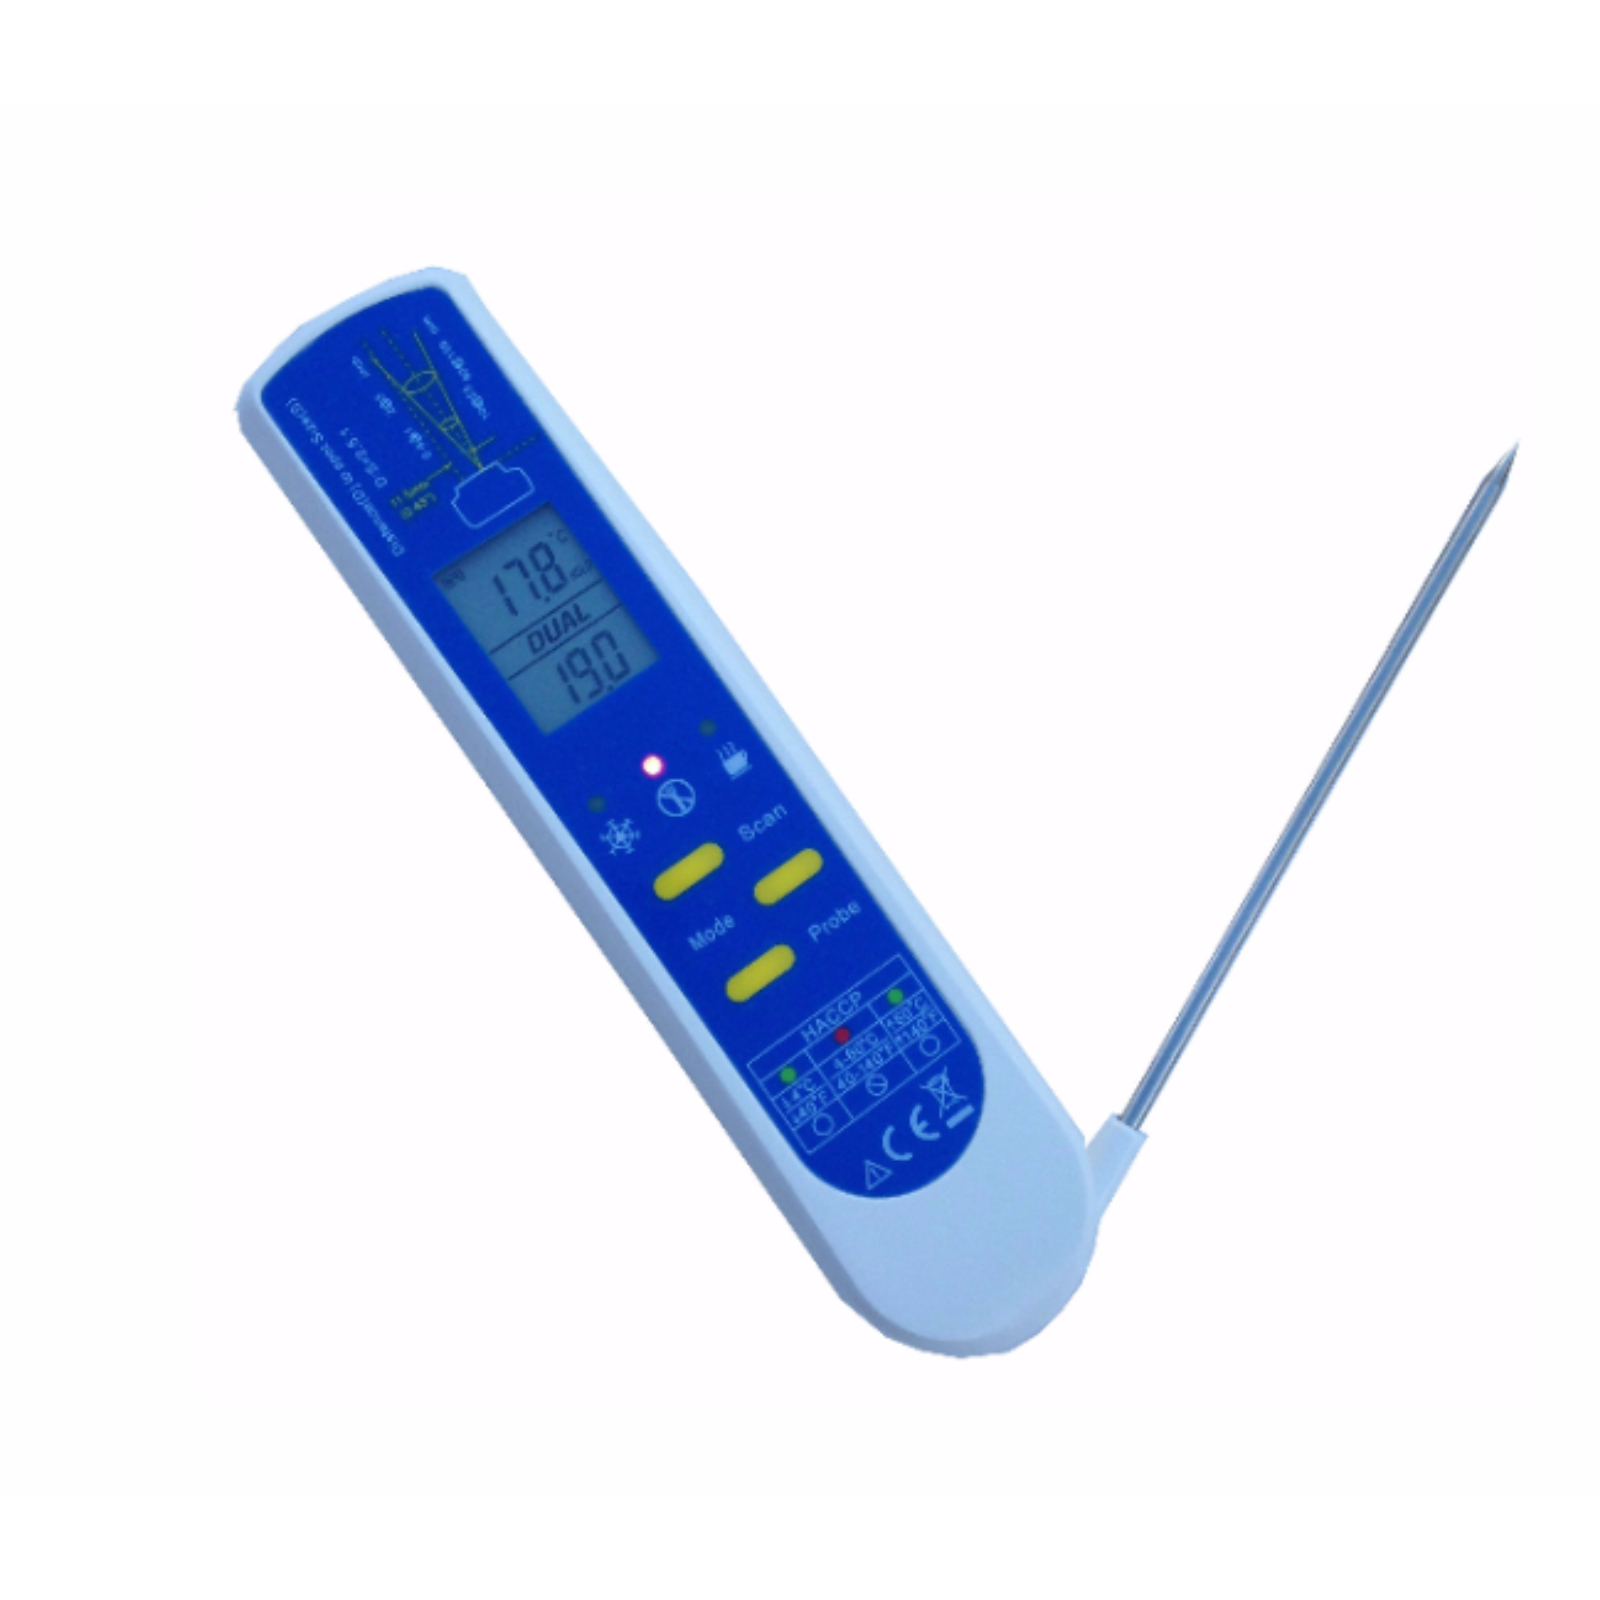 Lebensmittel-Thermometer (HACCP) mit einklappbarem Einstechfühler